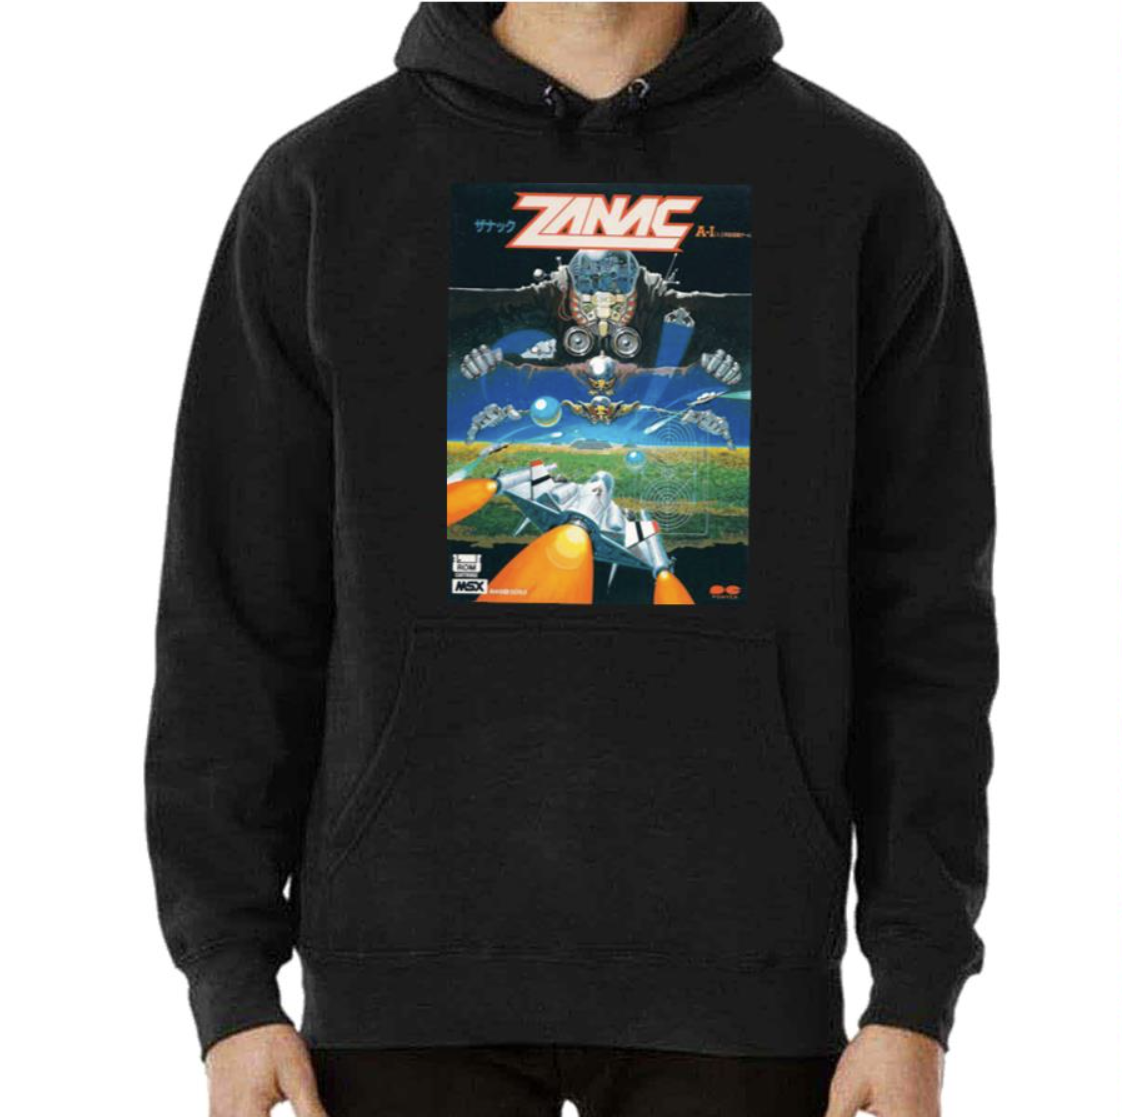 Retro 90s Graphic Zanac shirt